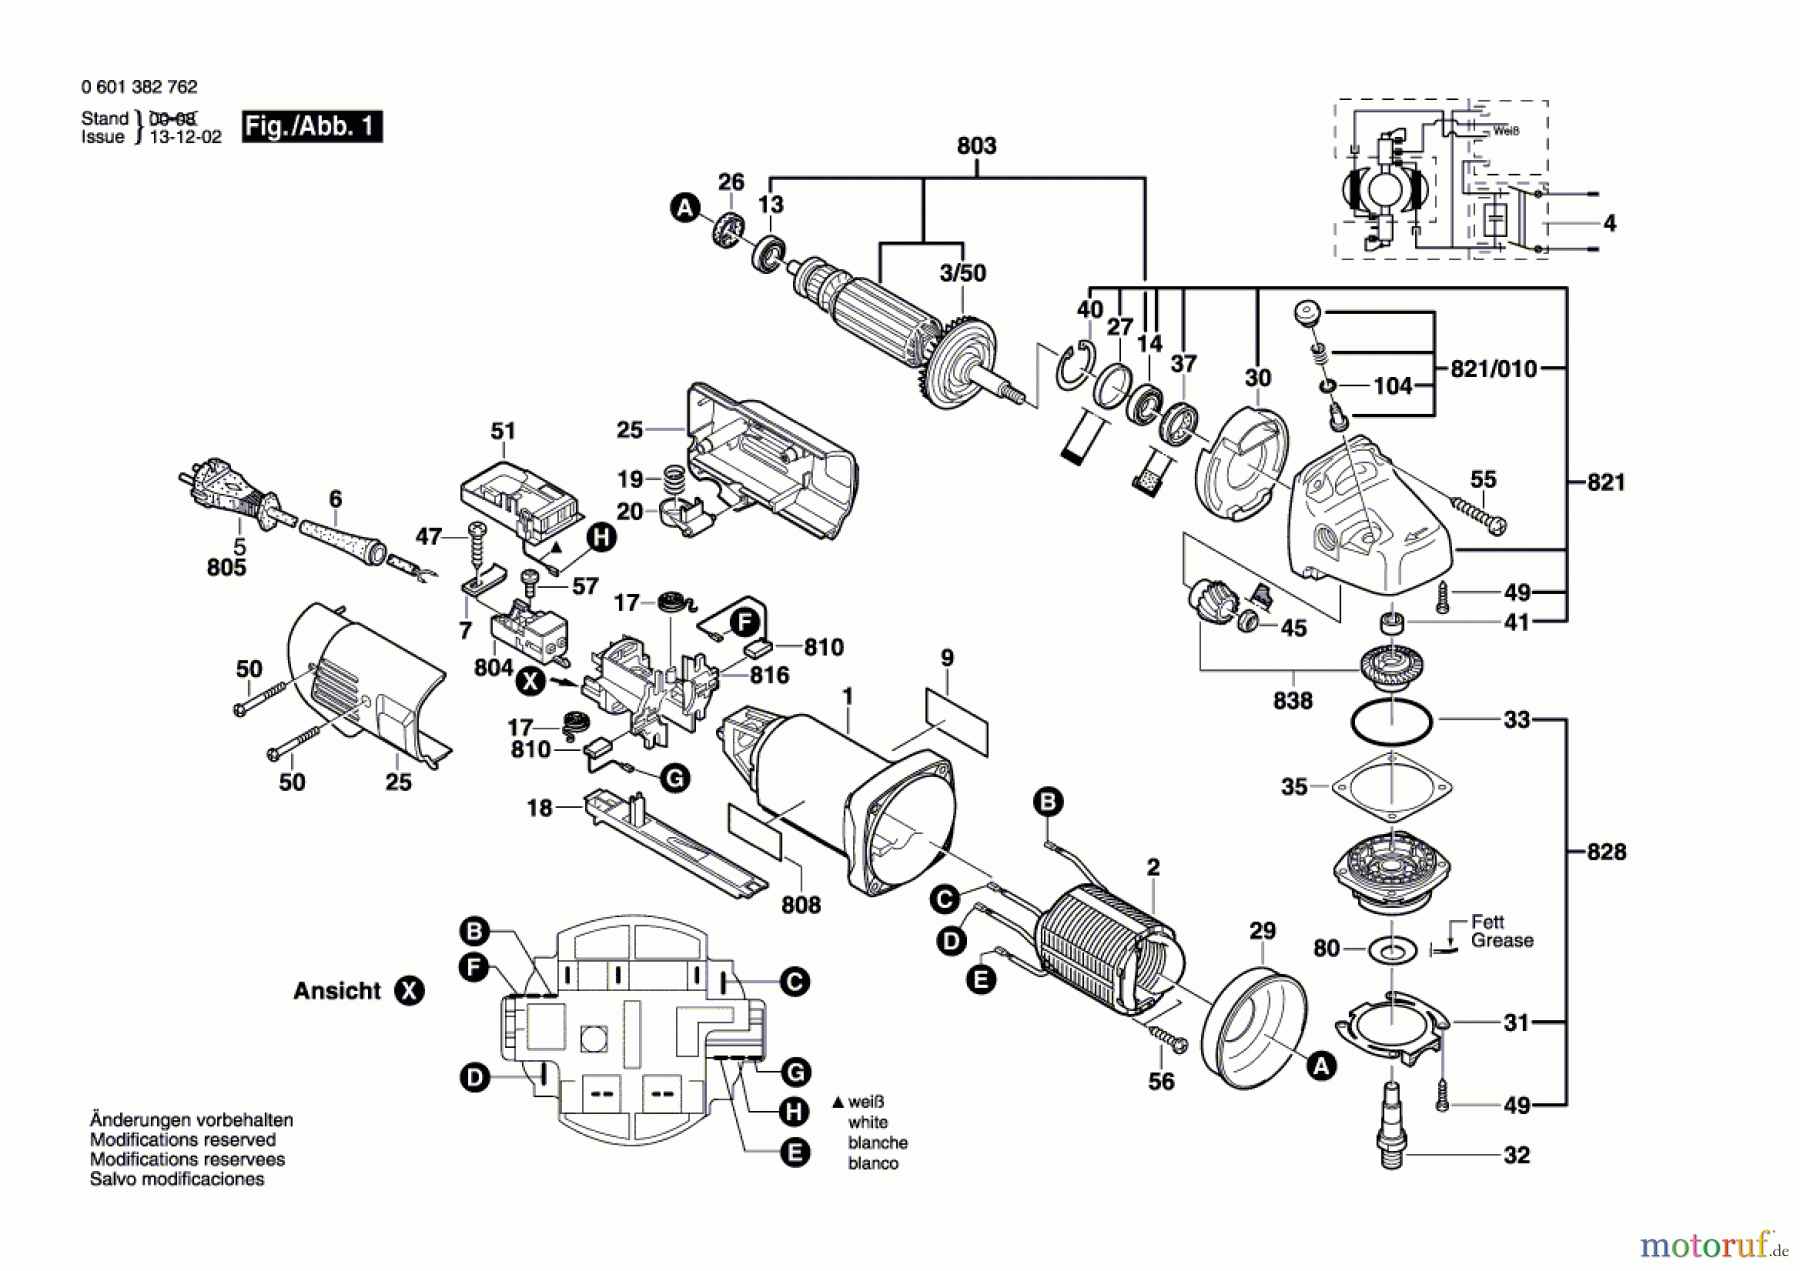  Bosch Werkzeug Winkelschleifer GWS 10-125 C Seite 1